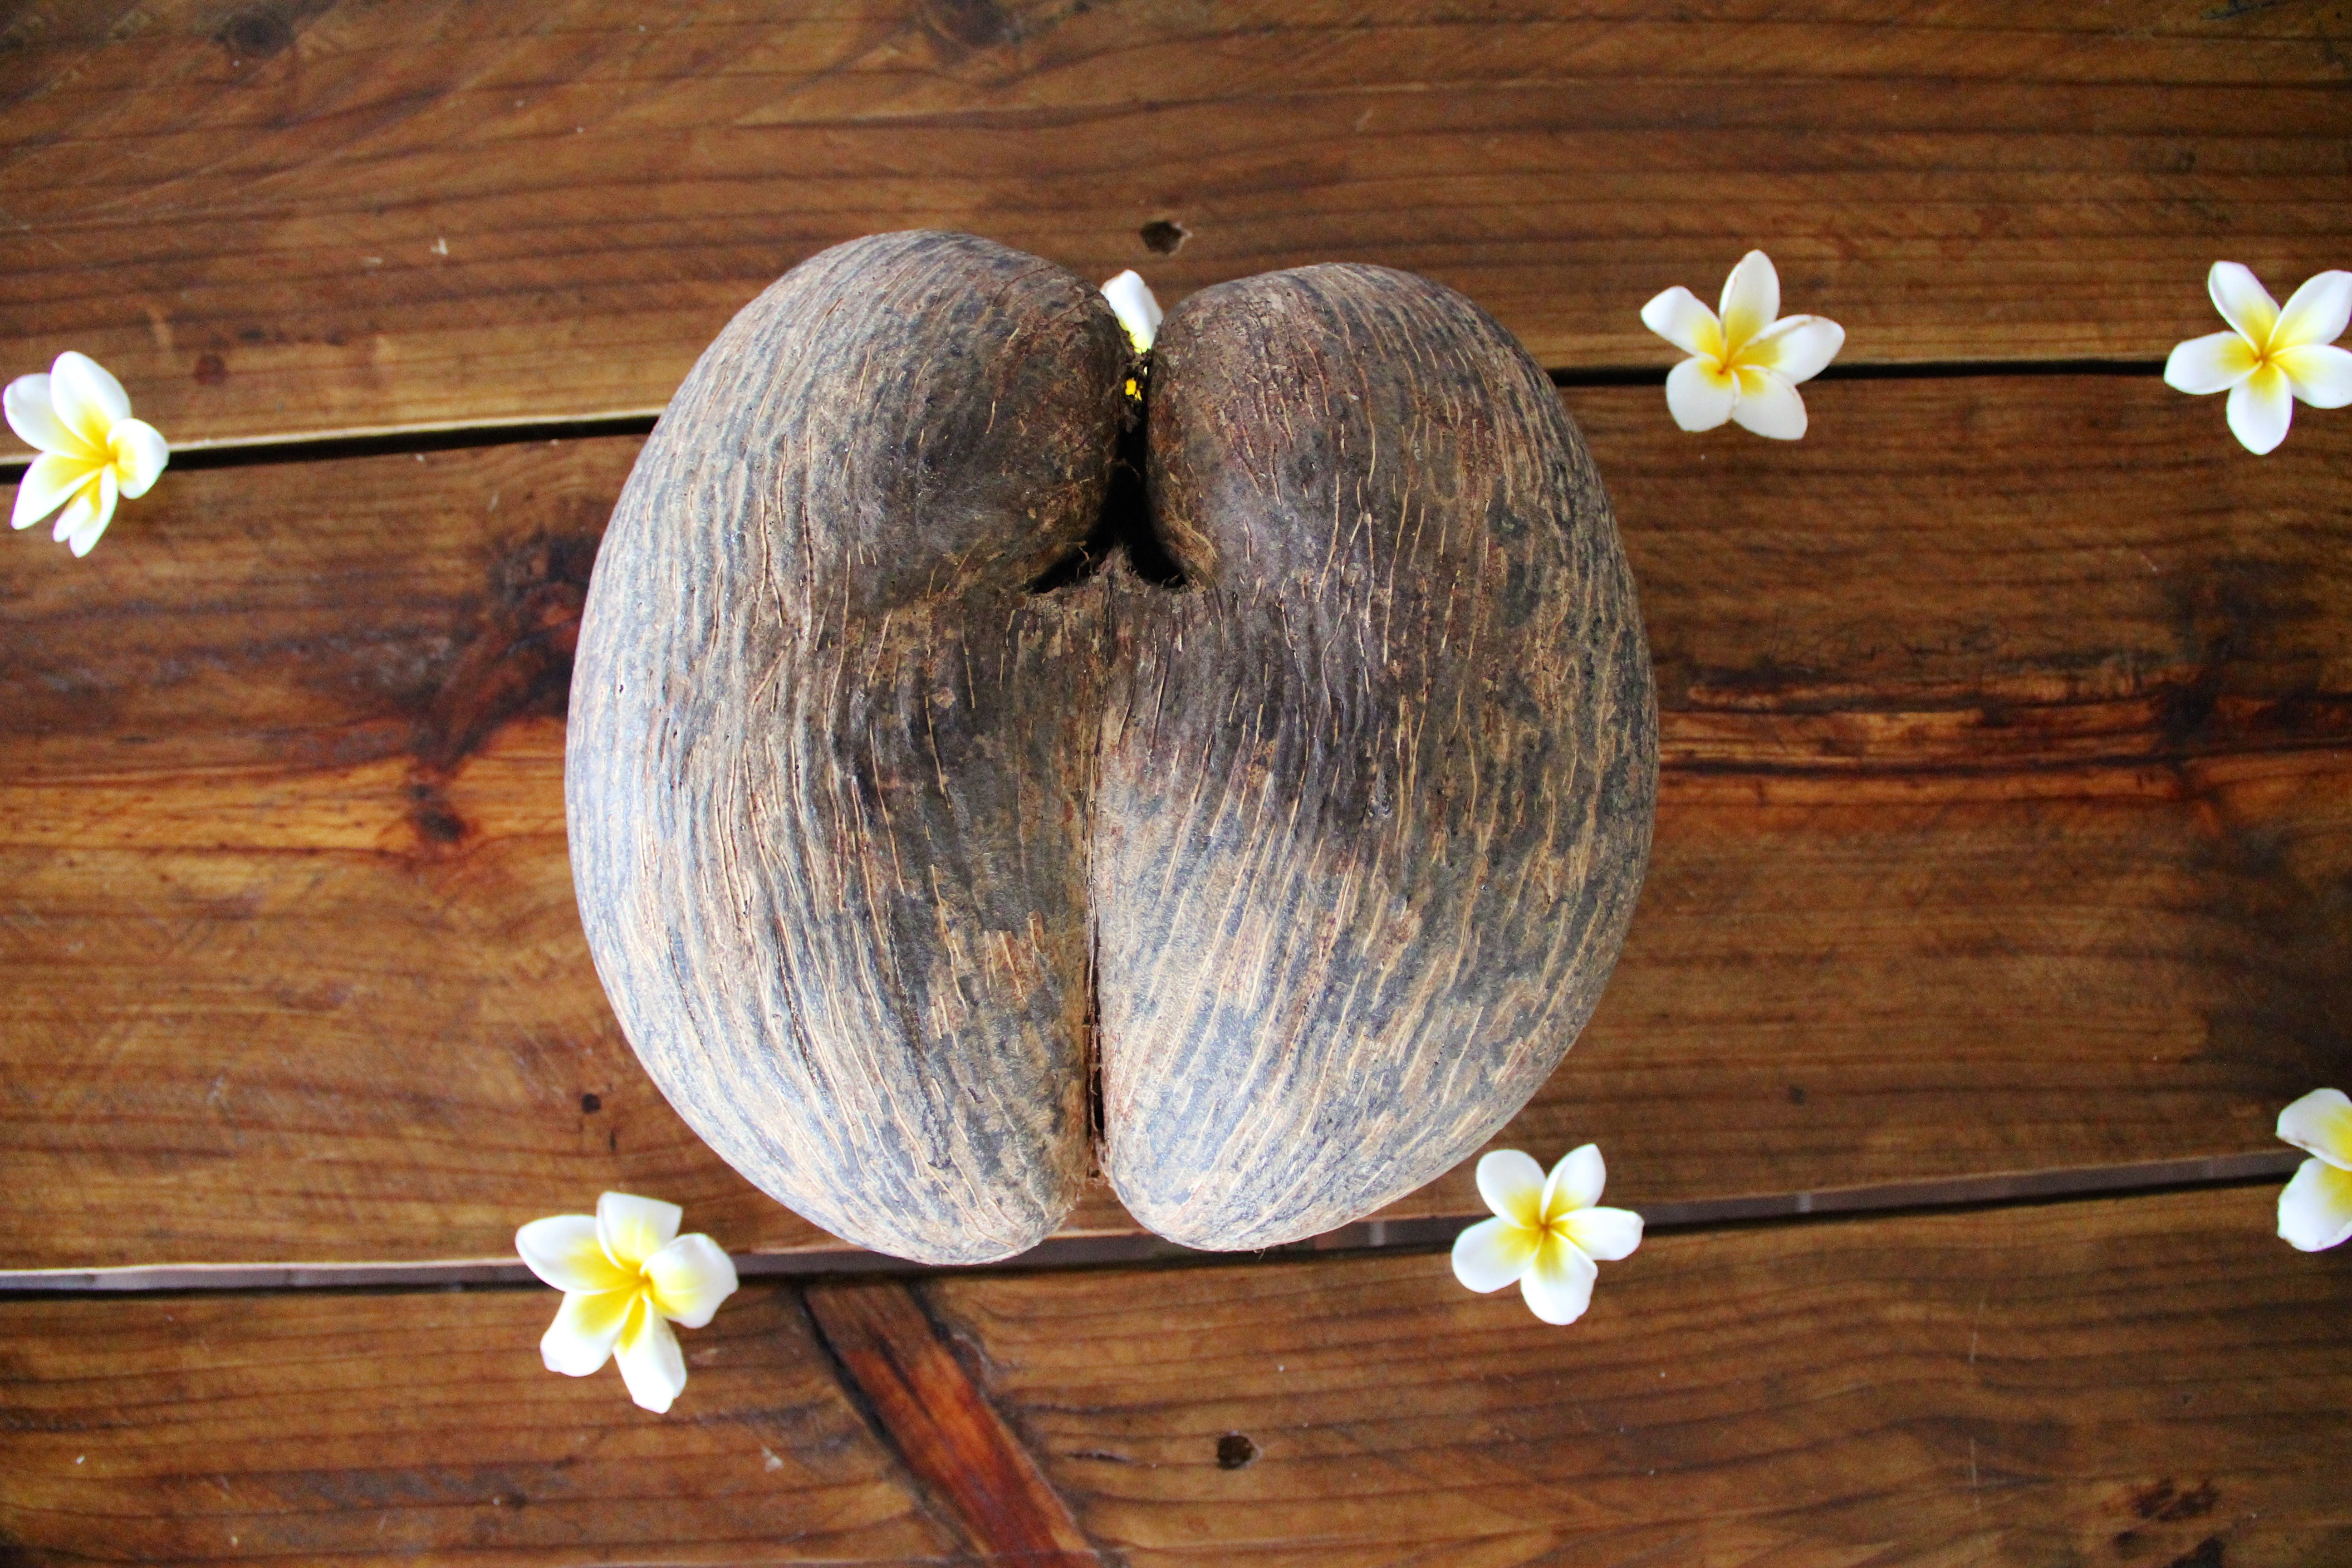 Flower wood мм2. Морской Кокос Коко-де-мер. Сейшельский орех Коко де мер. Коко-де-мер (морской орех). Плод сейшельской пальмы Коко-де-мер.